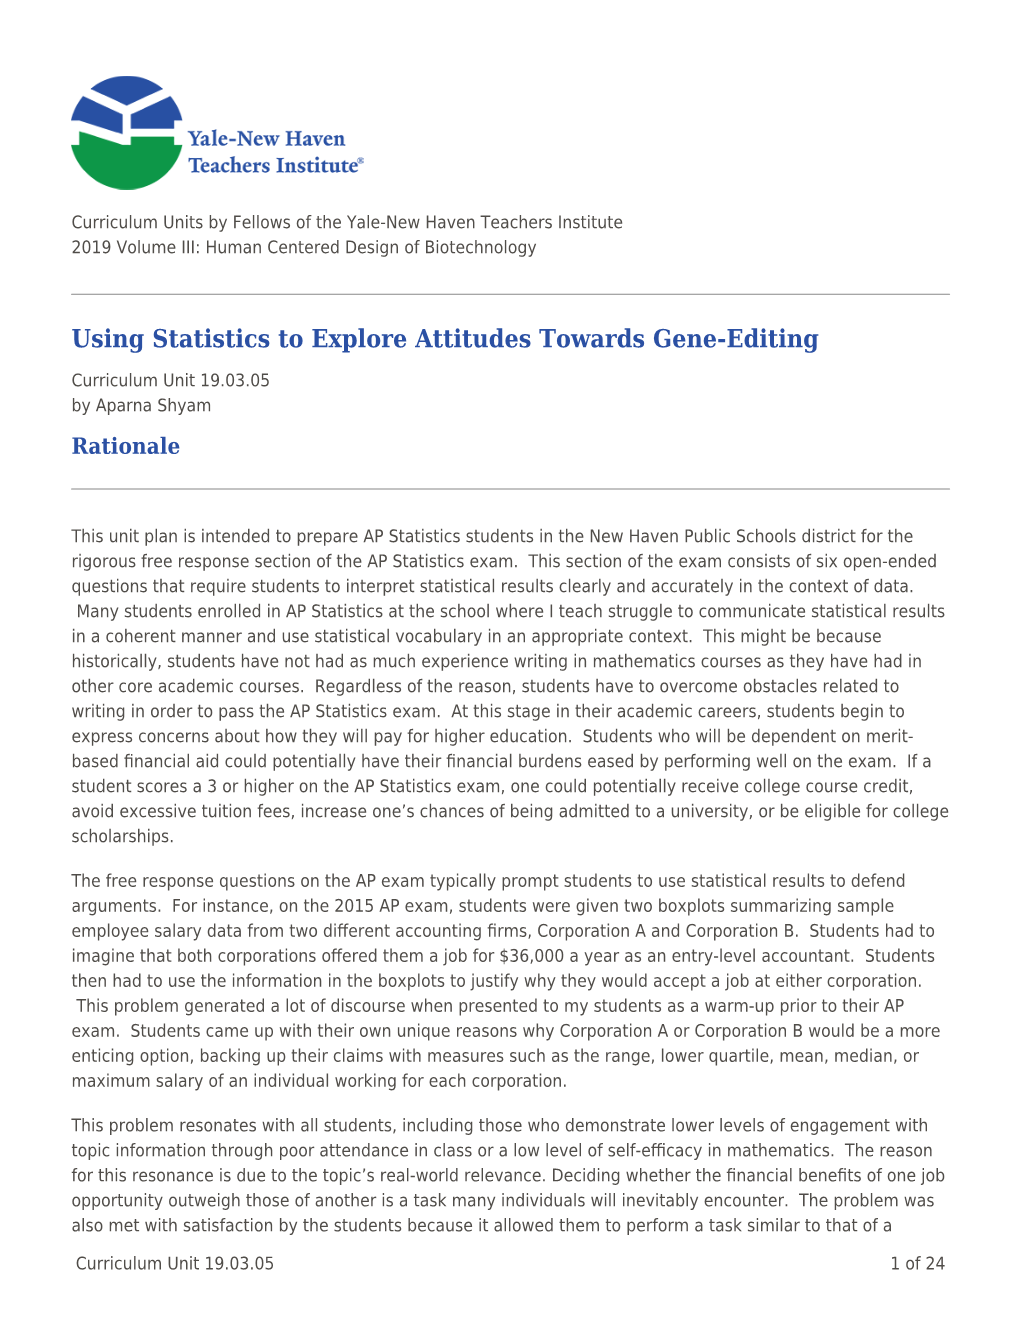 Using Statistics to Explore Attitudes Towards Gene-Editing